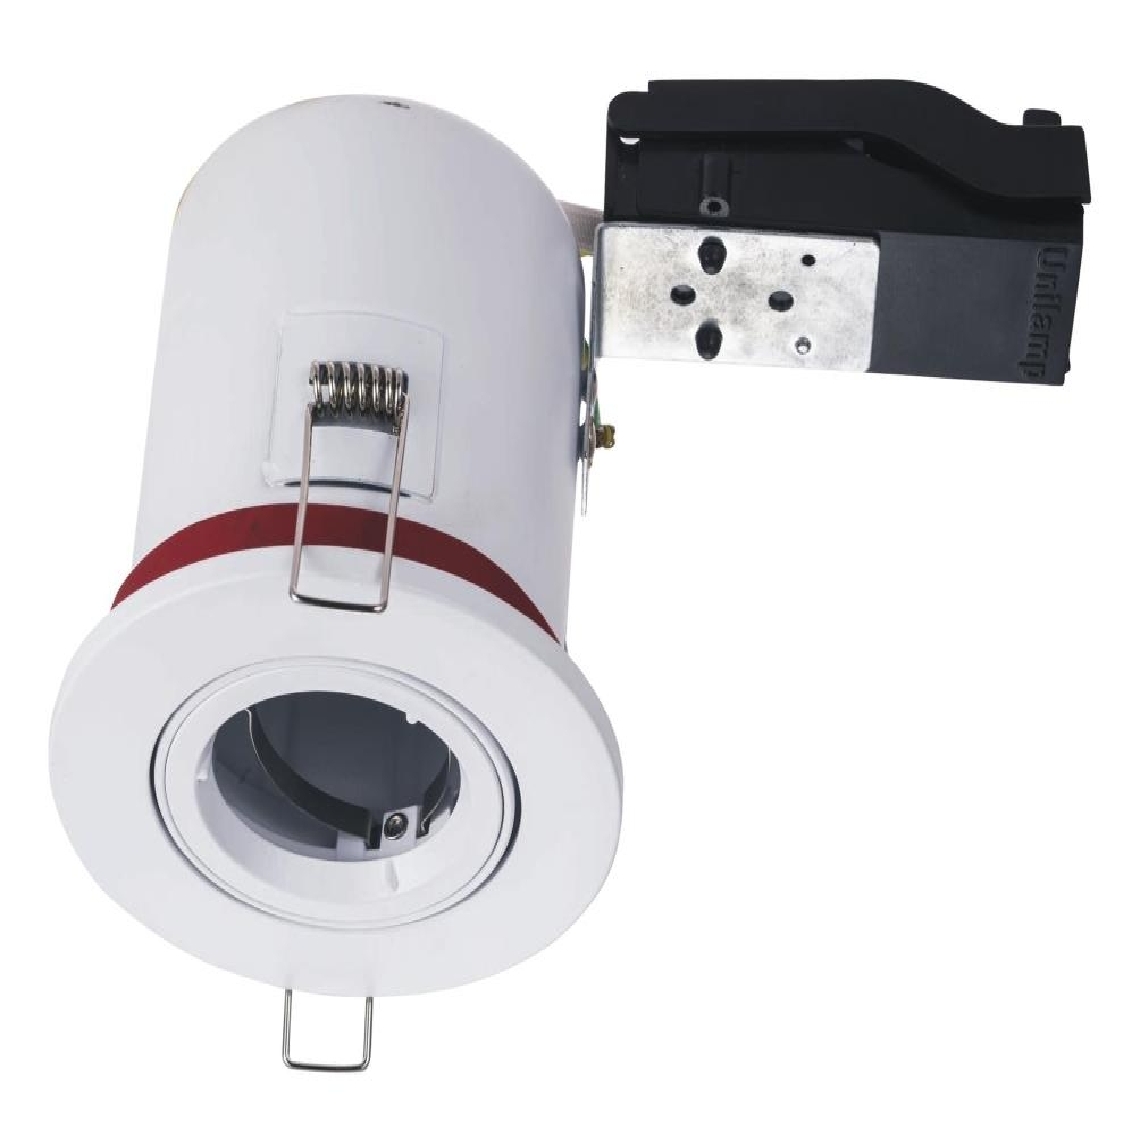 Lampesecoenergie - Spot BBC Orientable diametre 100mm avec douille GU10 automatique ref. 8025 - Moulures et goulottes